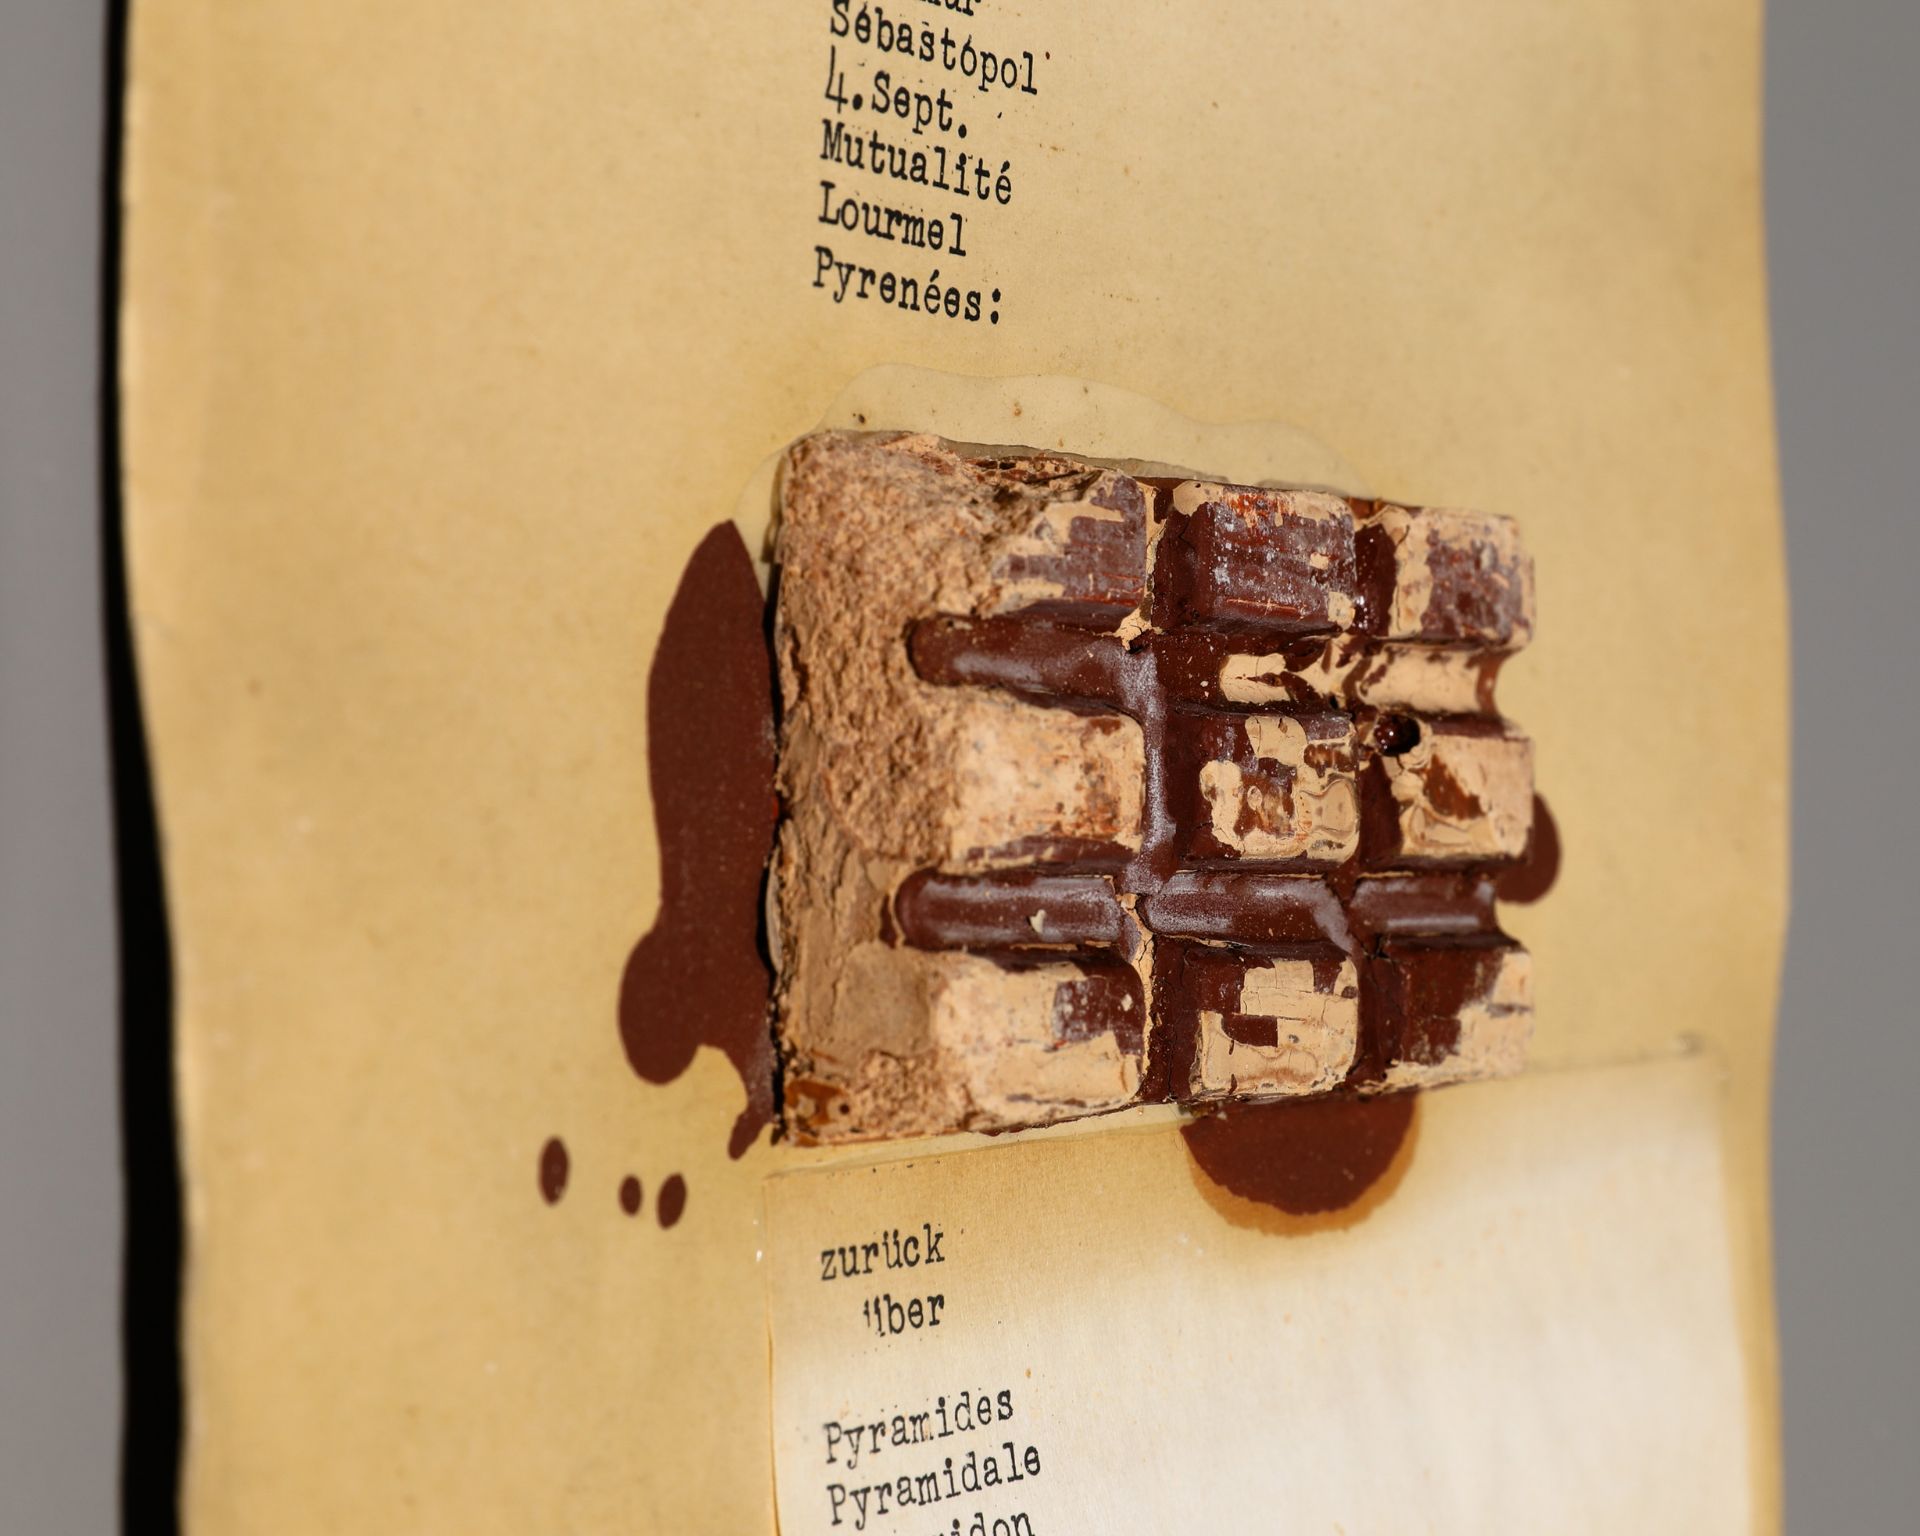 Joseph Beuys*, Mappe dé-coll/age 5, Zwei Fräulein mit Leuchtendem Brot, 1966 - Bild 3 aus 11